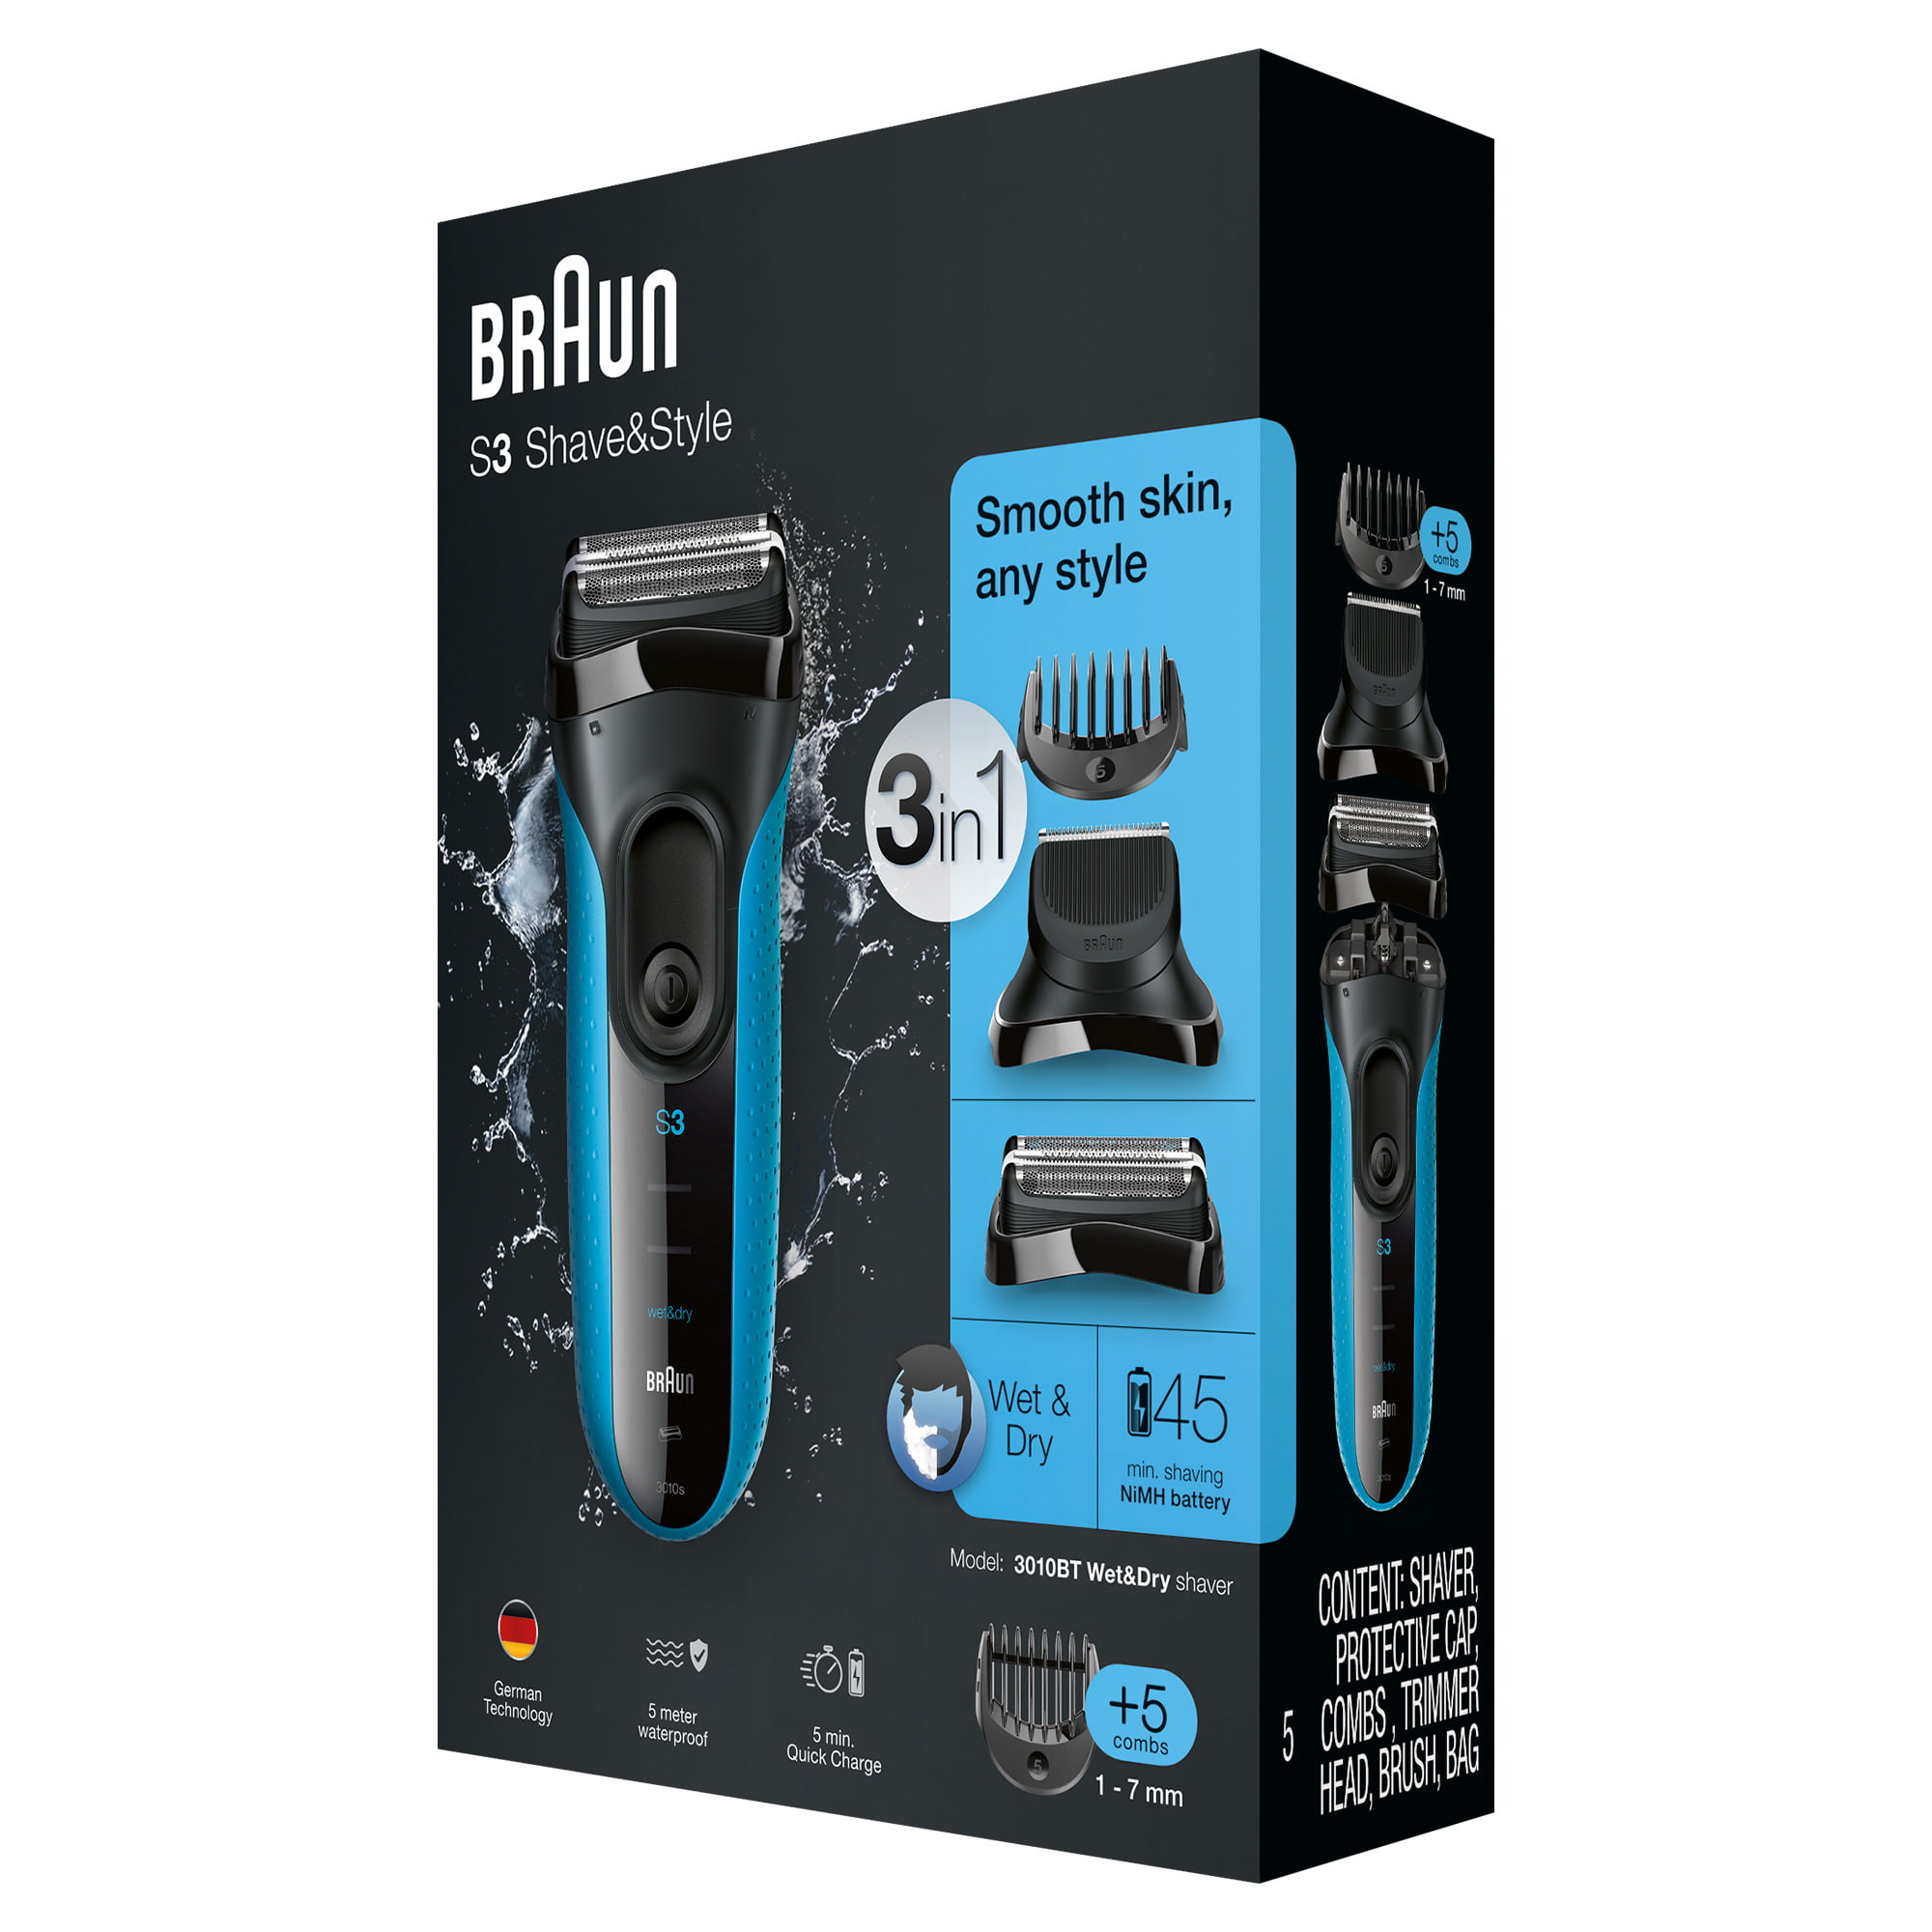 braun series 3 shave & style 3000bt